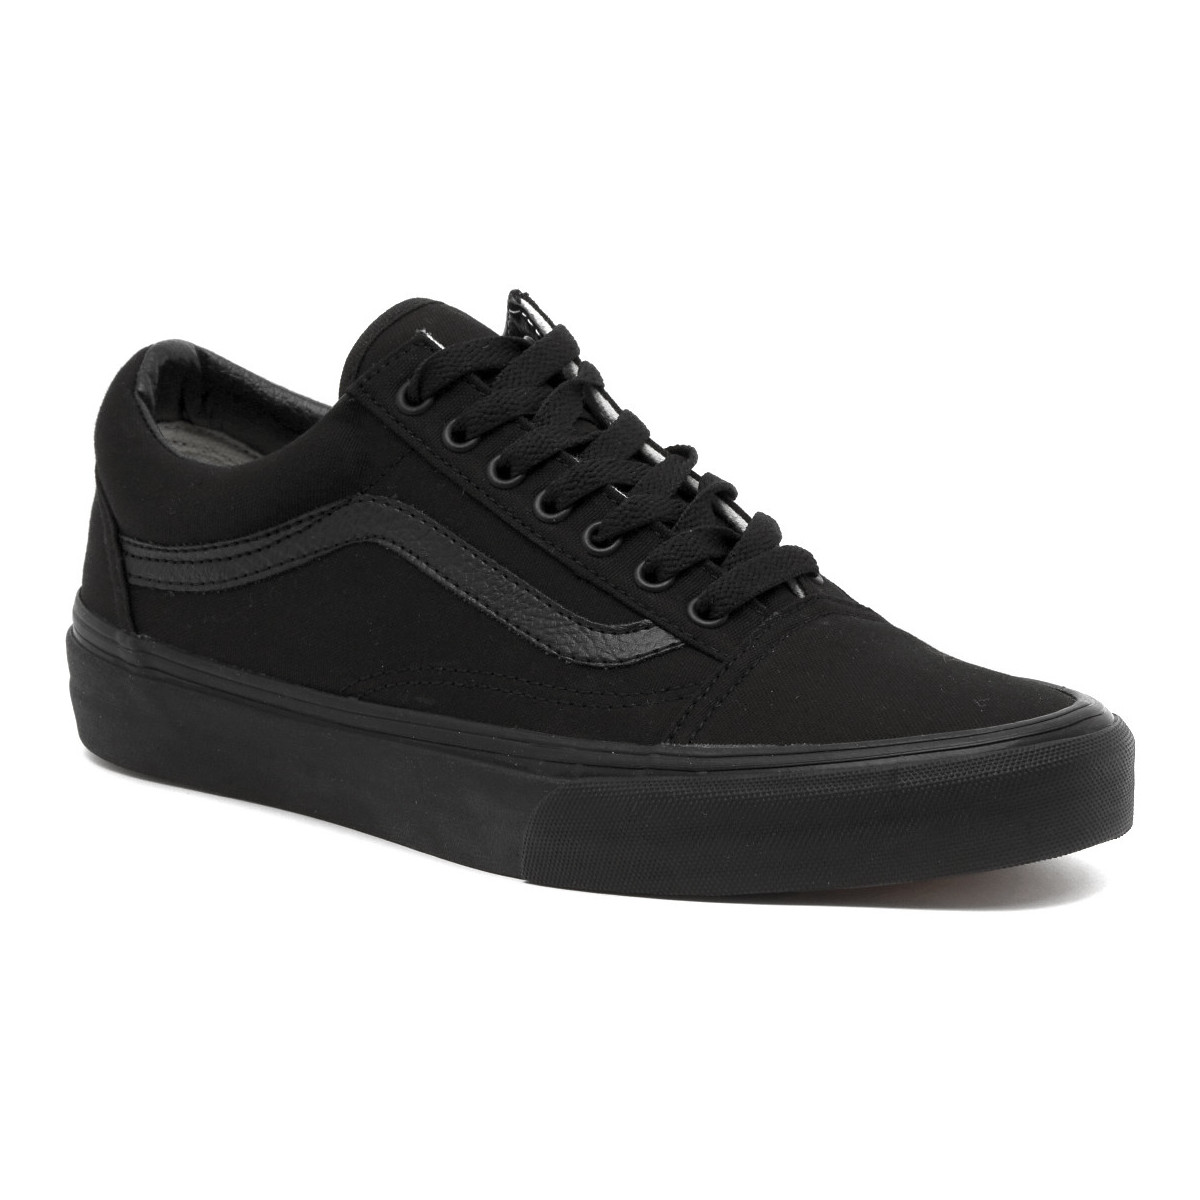 Vans Old Skool Sneakers Unisex - Black/Black - Maat 38,5